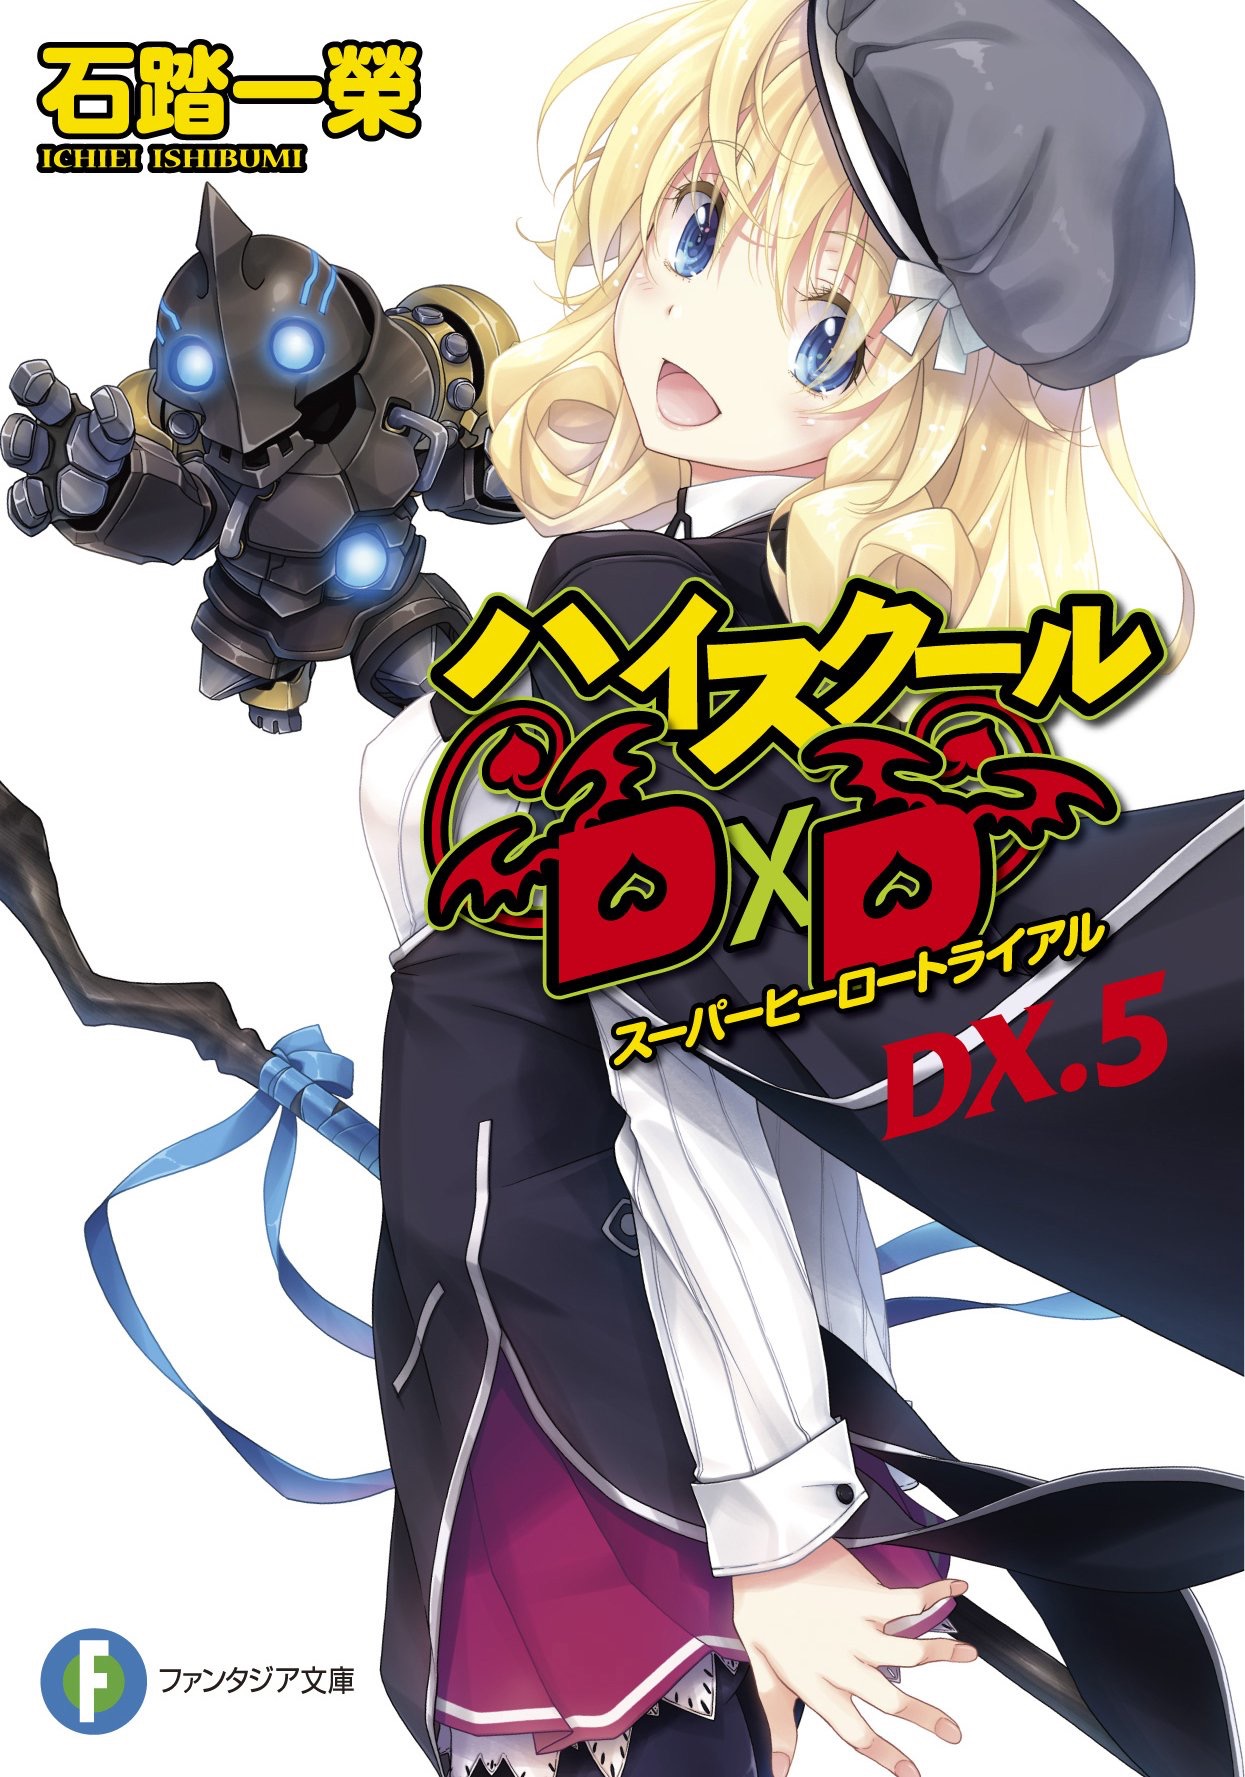 High School DxD, Vol. 5 (light novel) eBook by Ichiei Ishibumi - EPUB Book